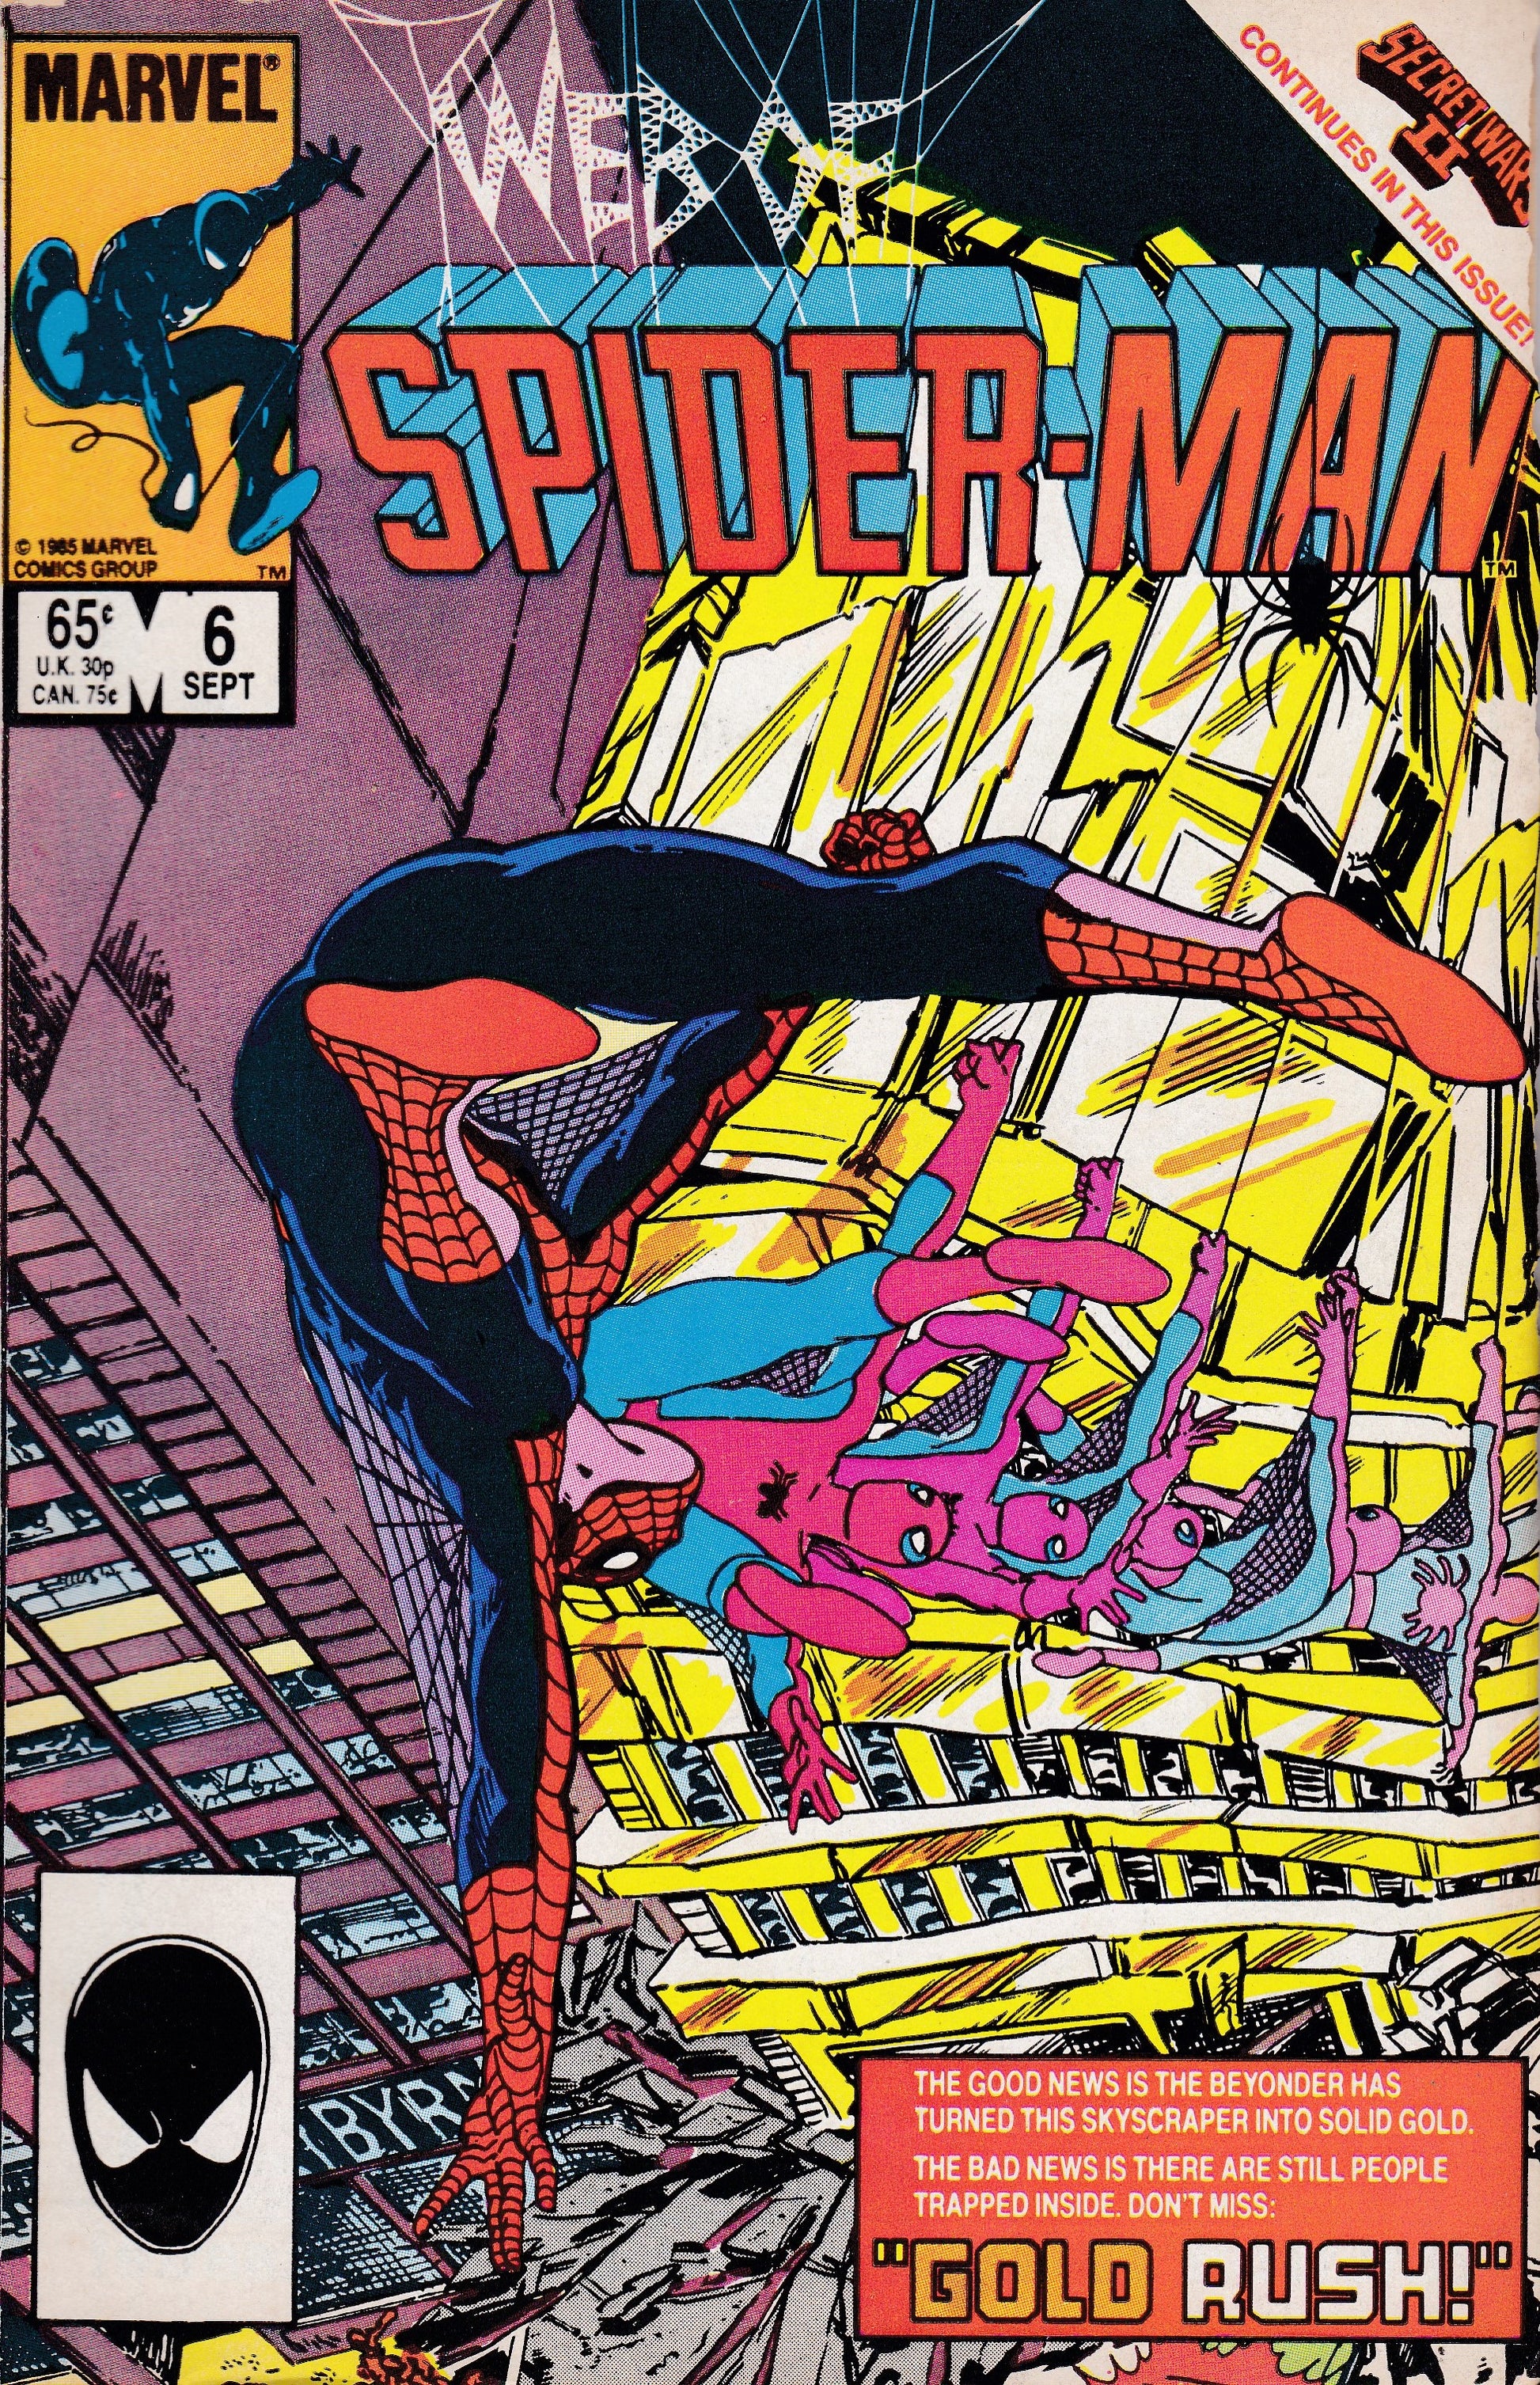 Web of Spider-Man # 6 Marvel Comics Vol. 1 – 